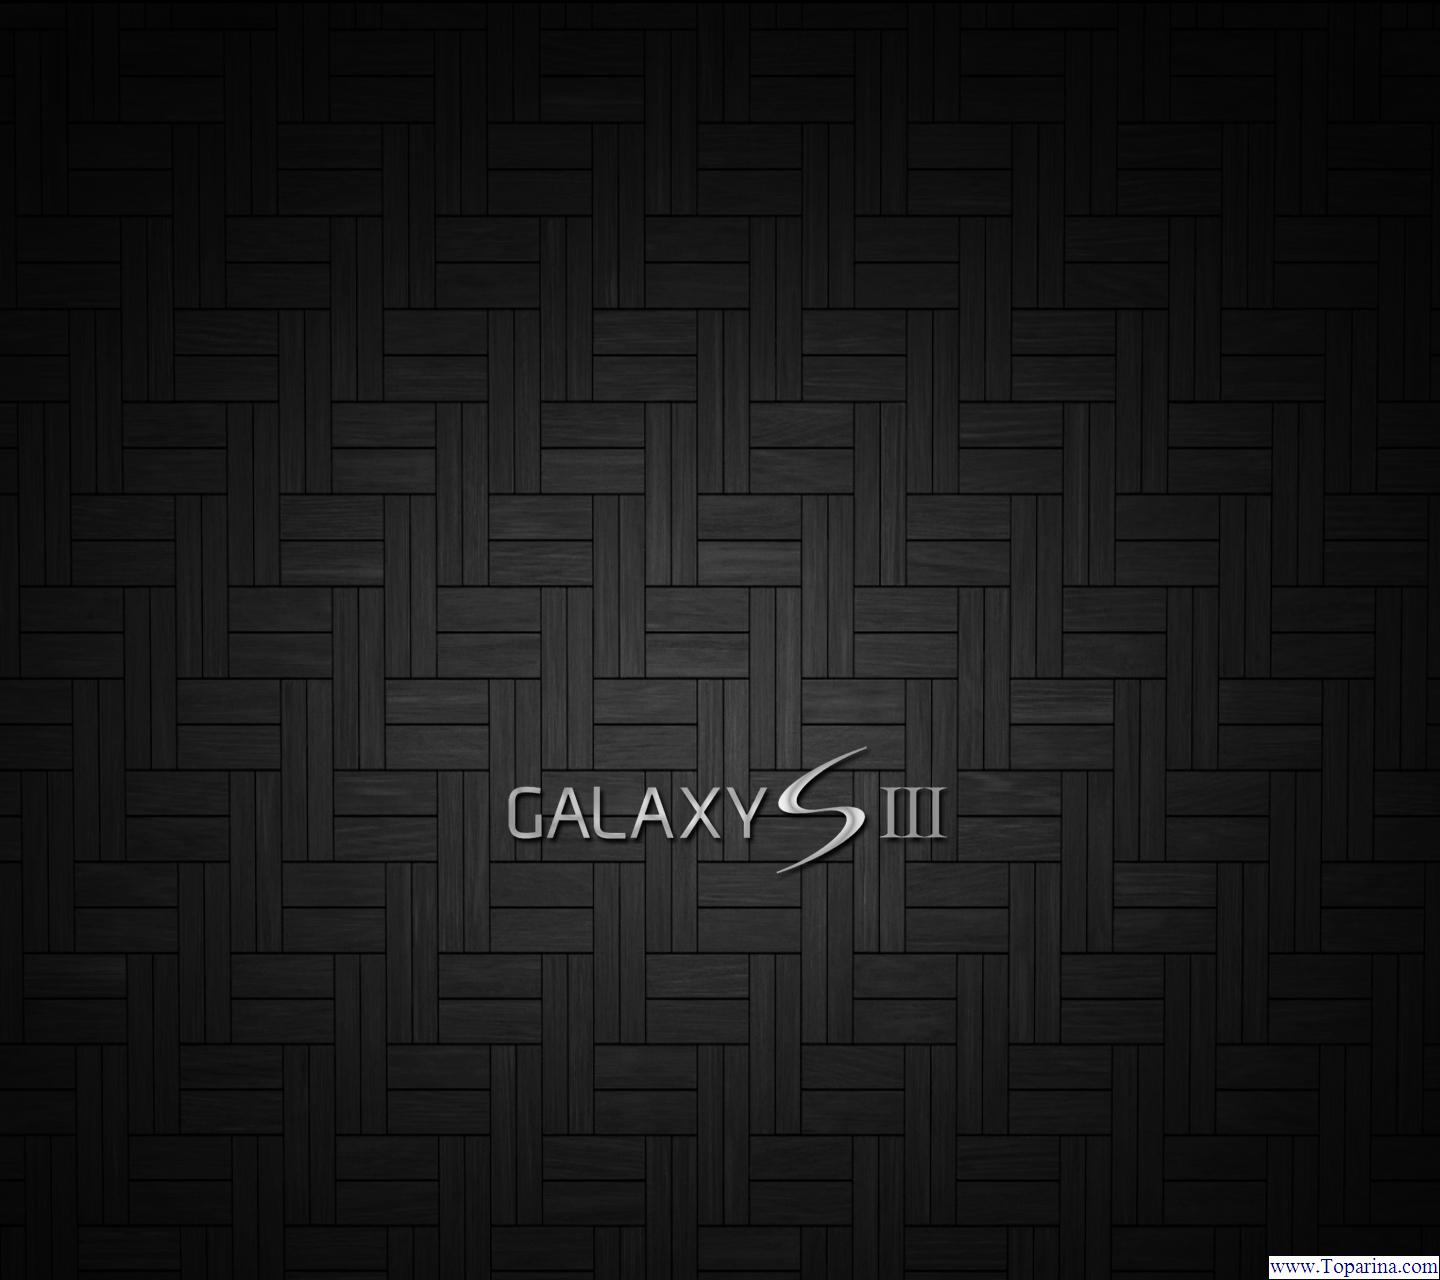 Bạn thích màu đen và muốn tìm kiếm cho mình một bức hình nền đen cho chiếc Samsung Galaxy S3 của mình? Đừng lo lắng, trên trang WallpaperDog chúng tôi có thể cung cấp cho bạn những hình nền đen đẹp nhất cho Samsung Galaxy S3 đó!